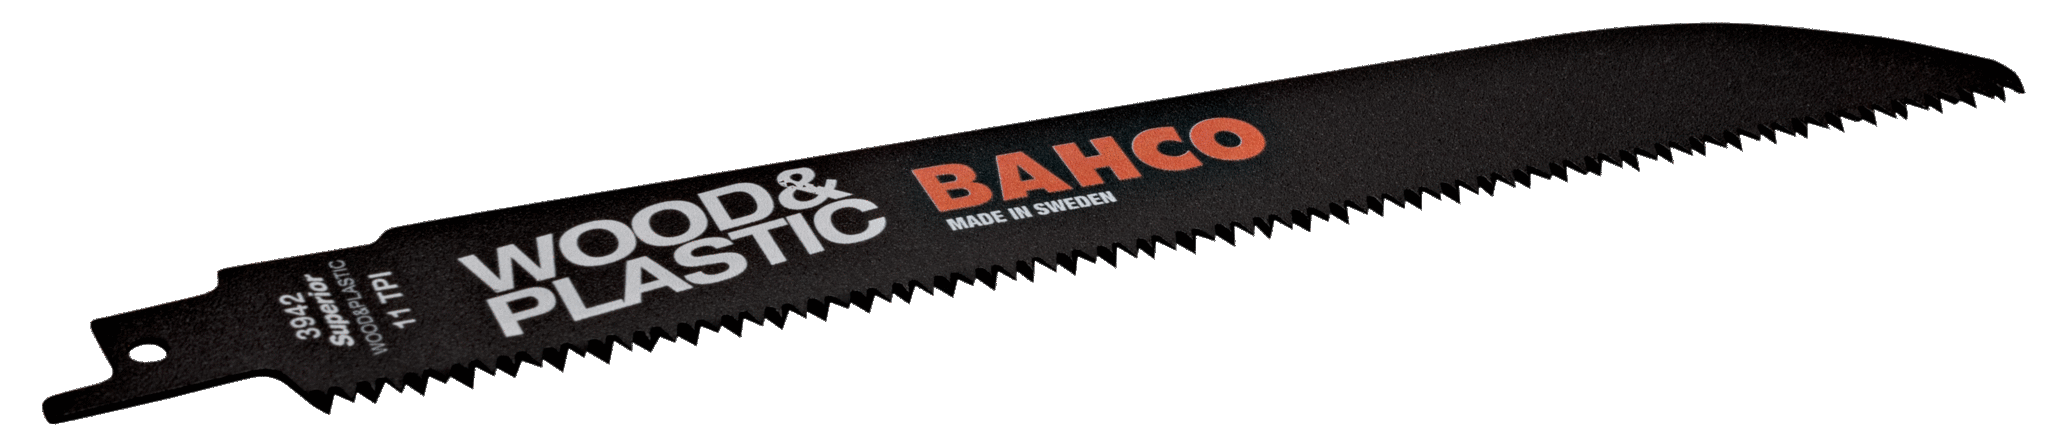 Bahco HCS-tigersågblad för trä, 11 tdr/tum - 228 mm - 2 st/förpackning